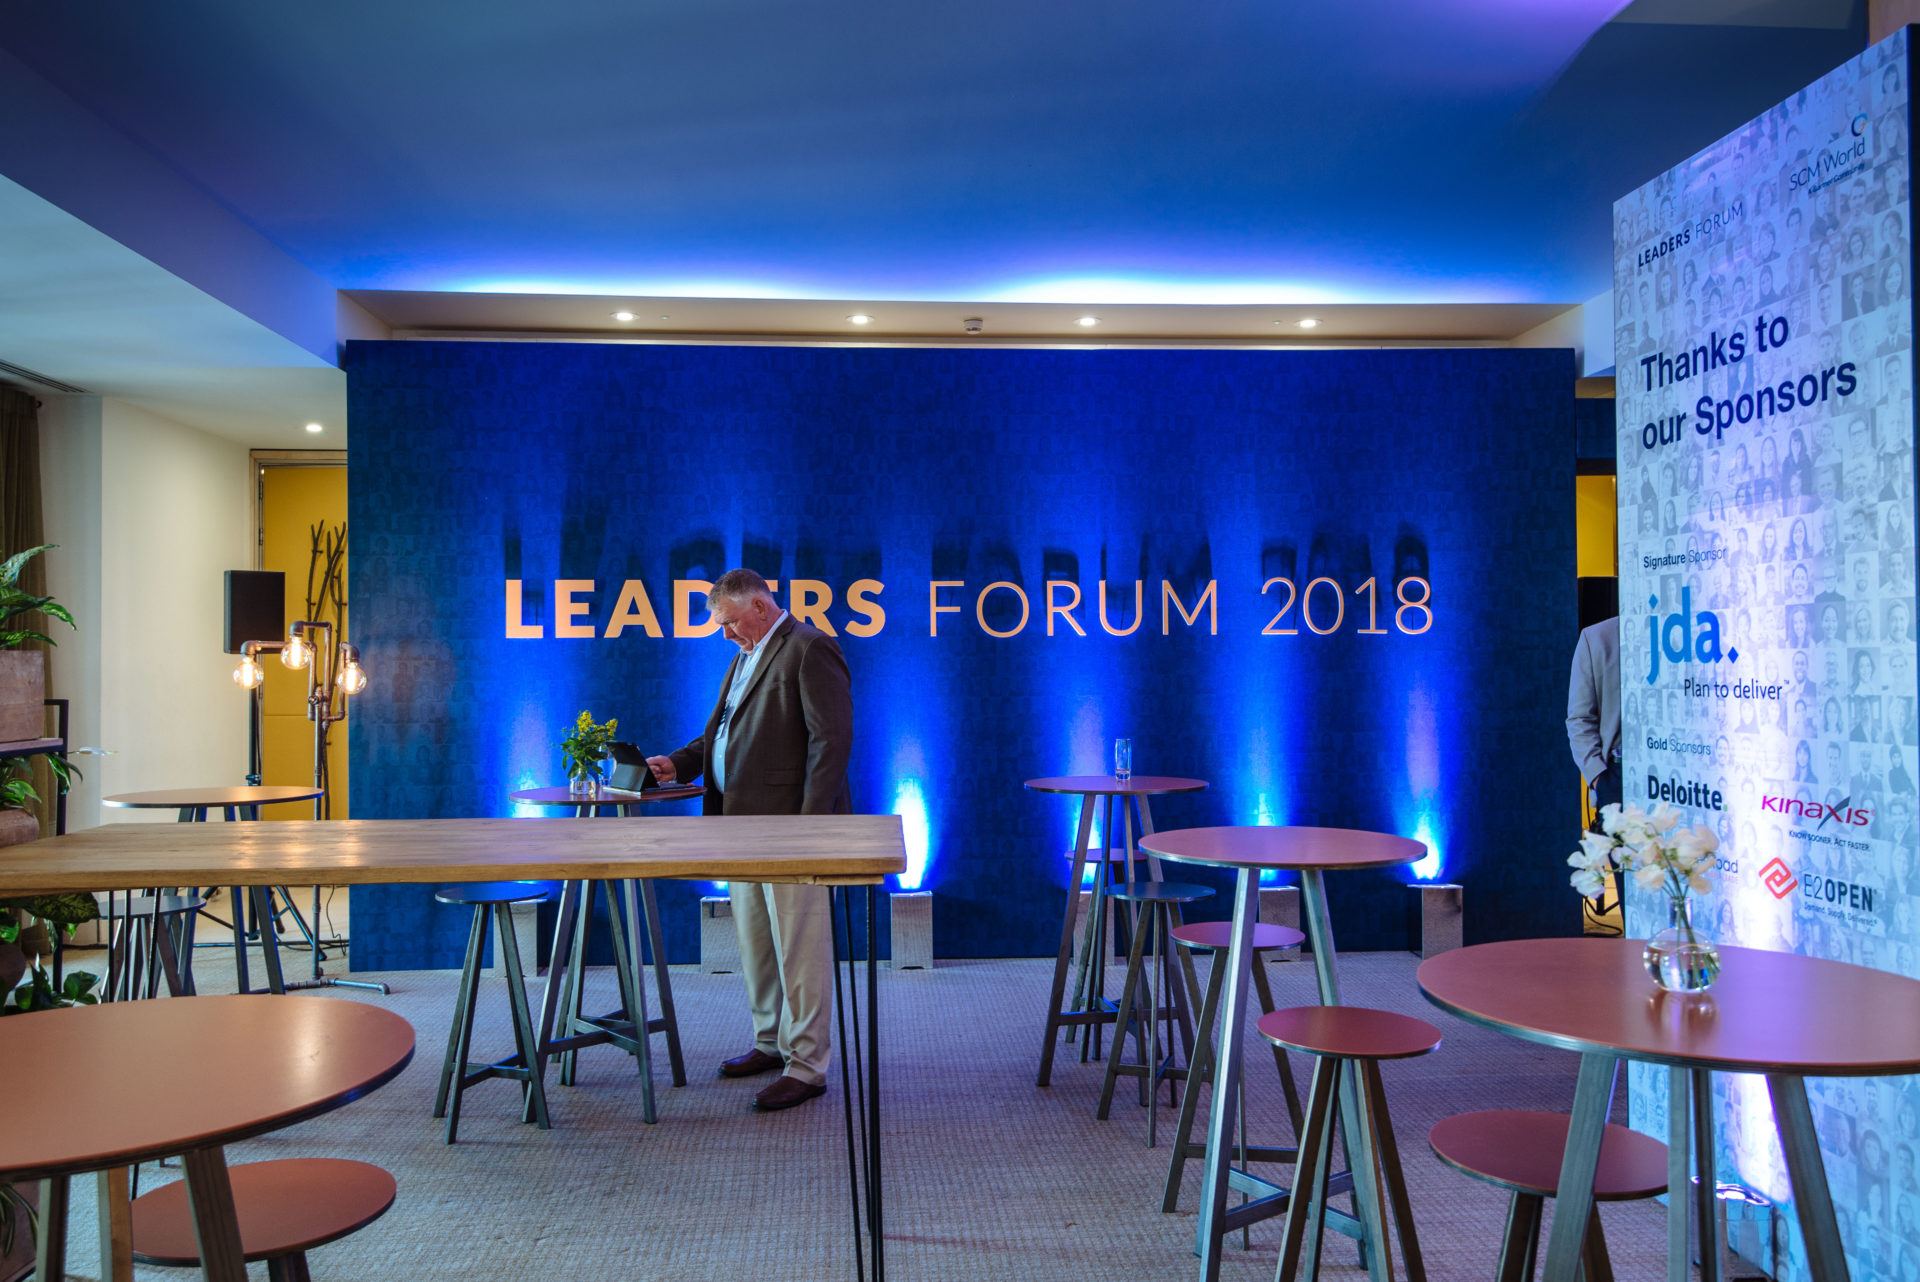 Leaders Forum 2018